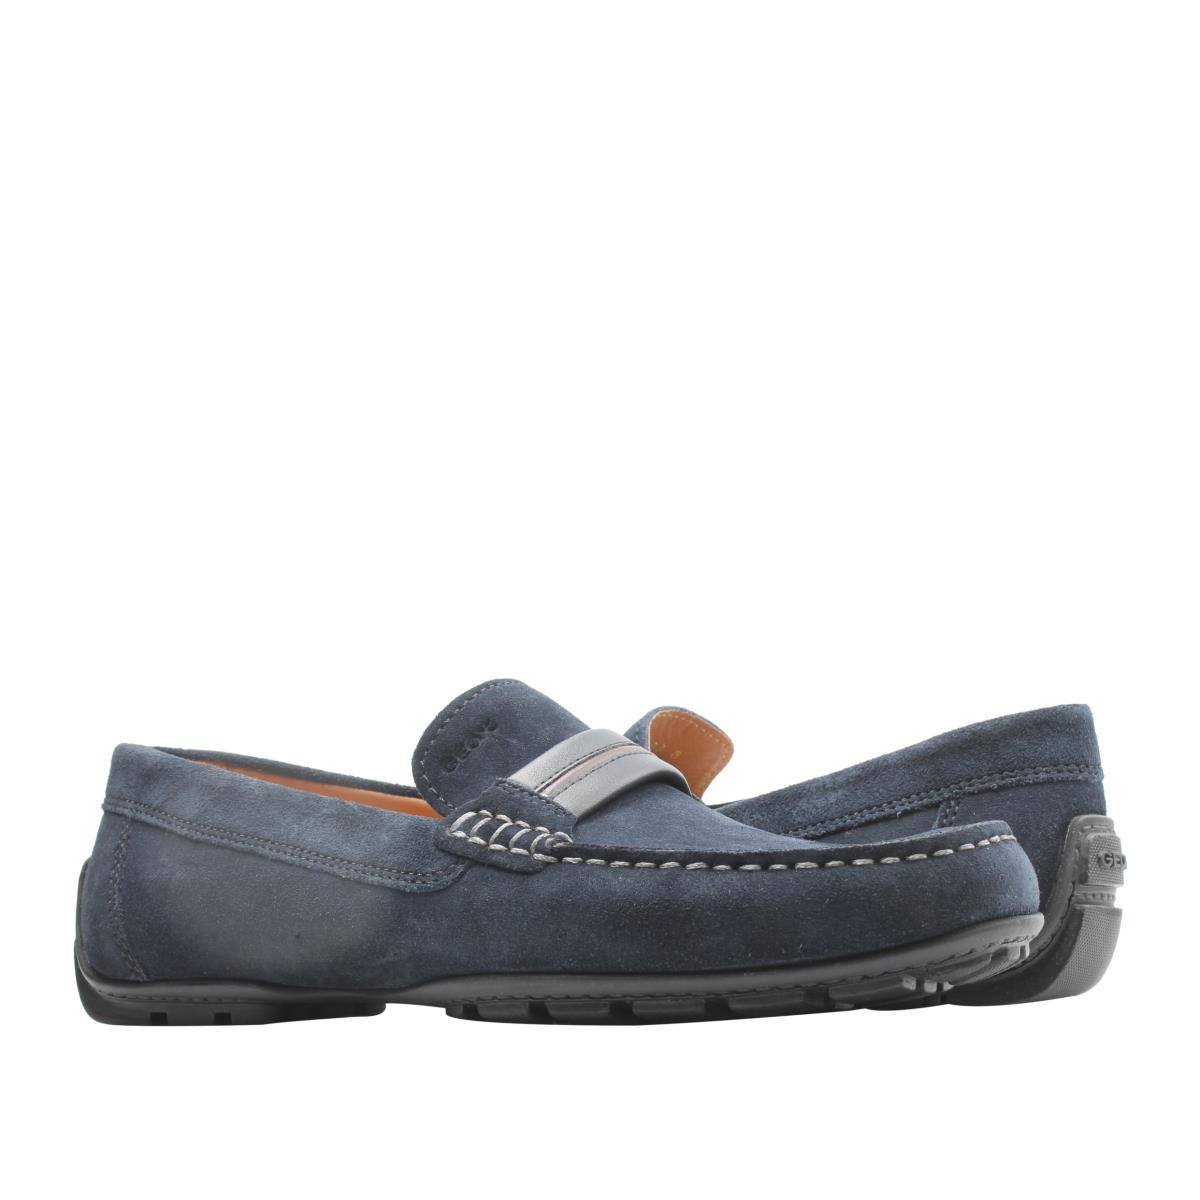 Geox Moner Mocassin Loafer Navy Suede Men`s Shoes U0244A-00022-C4002